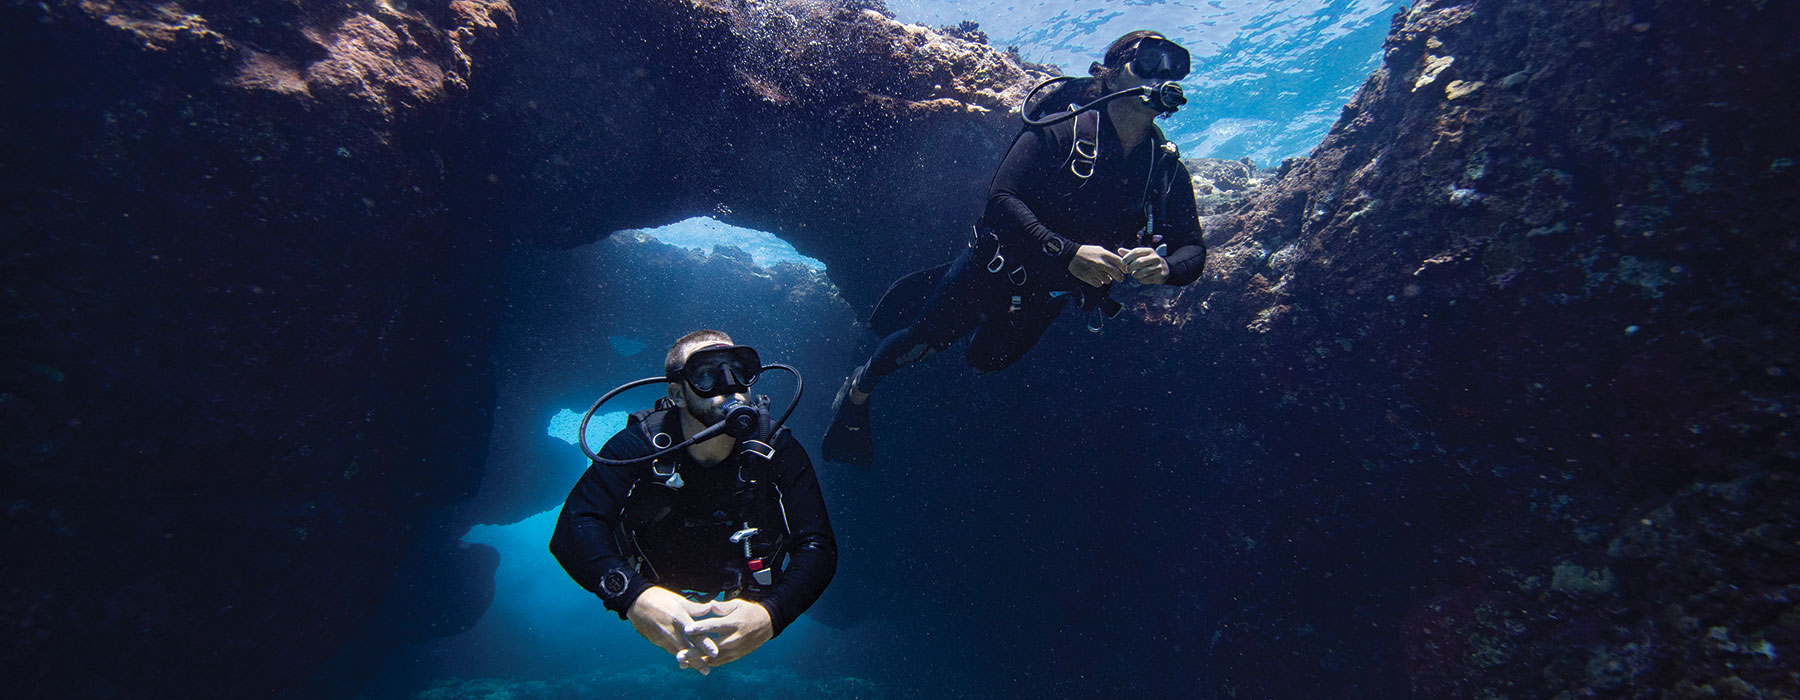 潜水科技 - 2 divers diving in the ocean